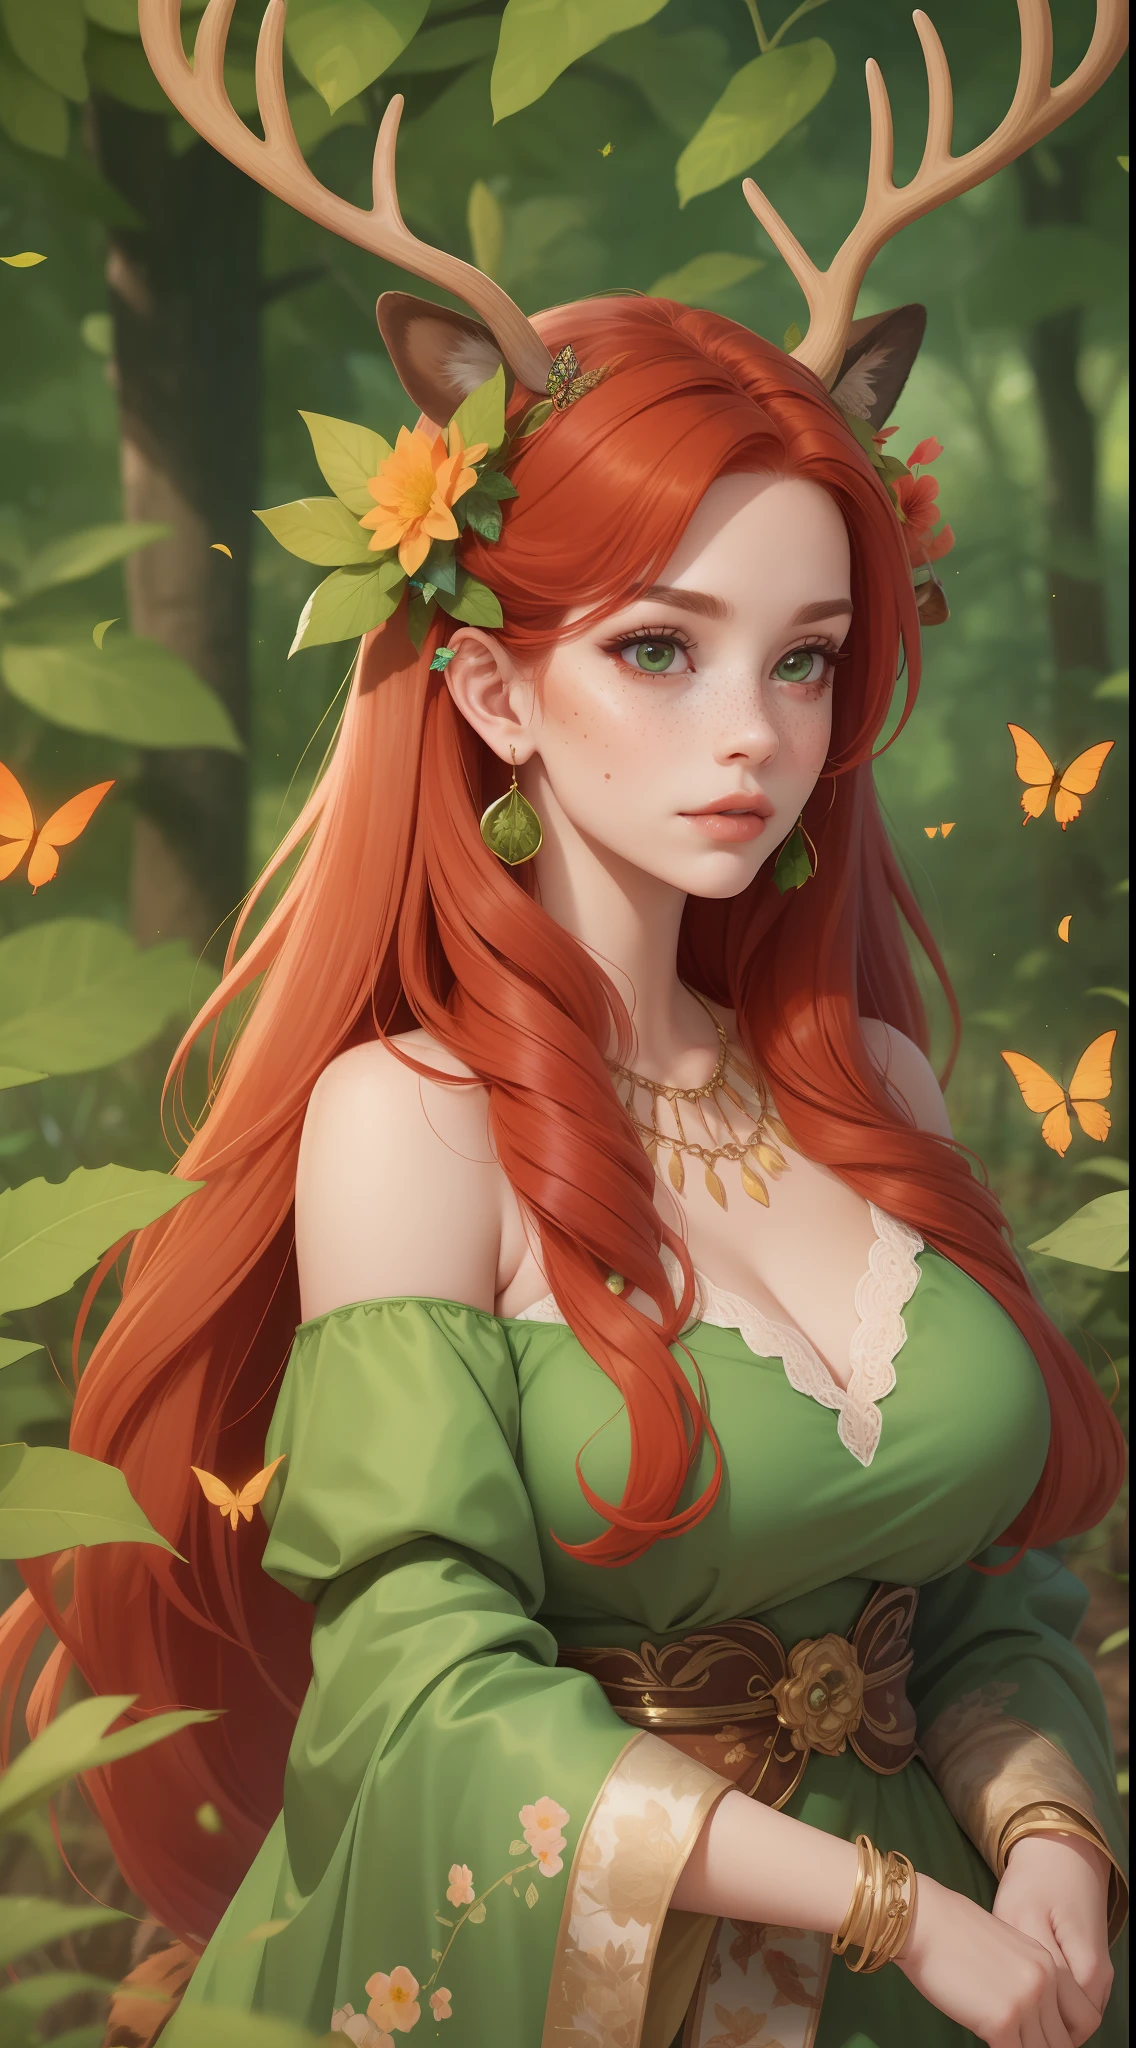 uma mulher adulta madura com chifres e cabelo ruivo brilhante vestindo uma roupa verde de fantasia feita de folhas e flores com borboletas ao seu redor. Ela tem orelhas de veado. Orelhas de fulvo. Borboletas no cabelo. ela tem muitas sardas. cenário de floresta cercado por borboletas